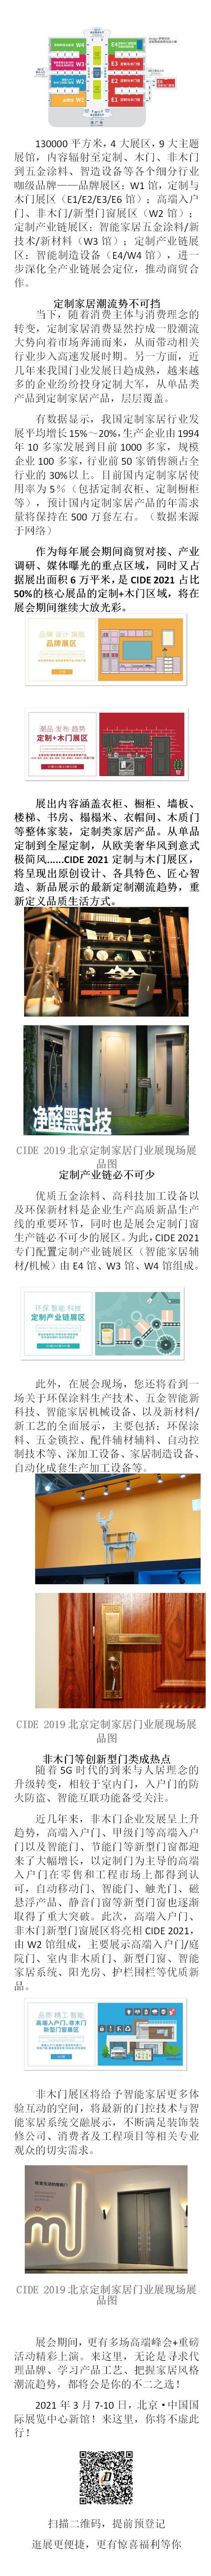 定制家居潮流趋势的首选平台  CIDE 2021北京定制家居门业展，你不得不来！_看图王.jpg